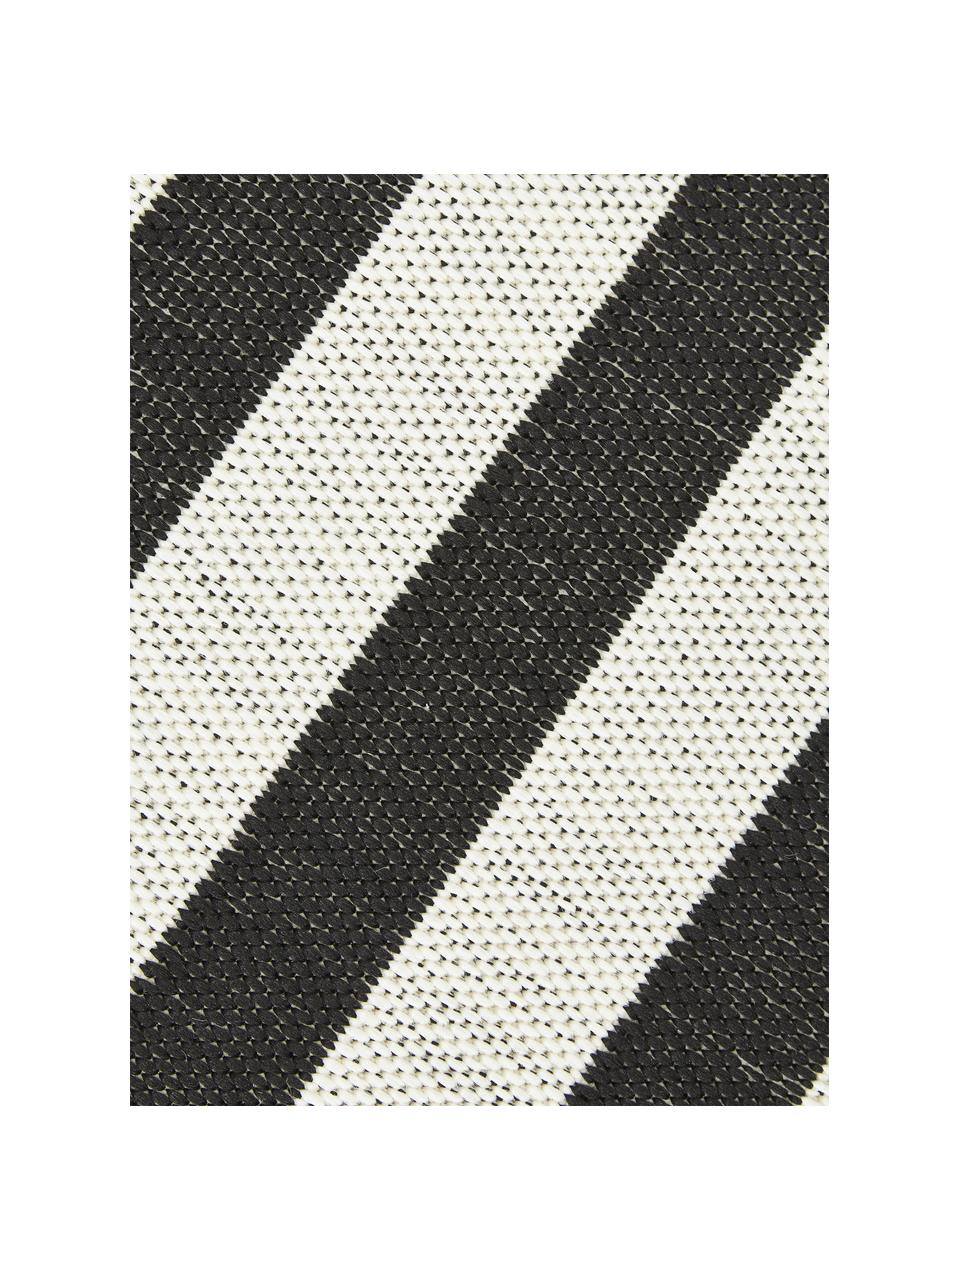 Pruhovaný interiérový/exteriérový koberec Axa, 70 % polypropylen, 30 % polyester, Tlumeně bílá, černá, Š 200 cm, D 290 cm (velikost L)